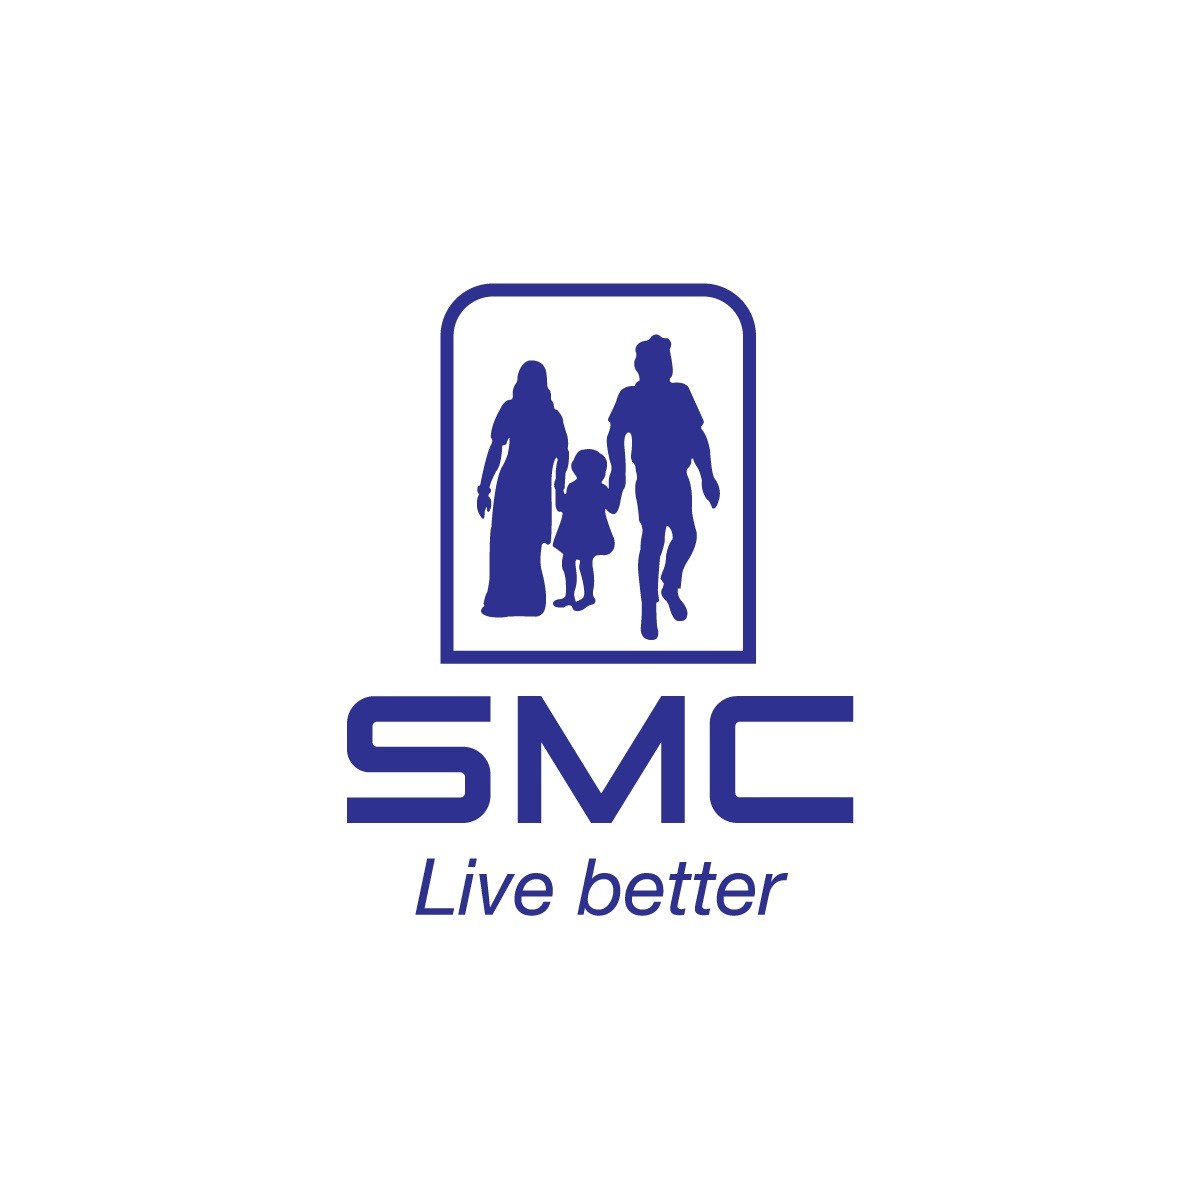 Social Marketing Company (SMC)